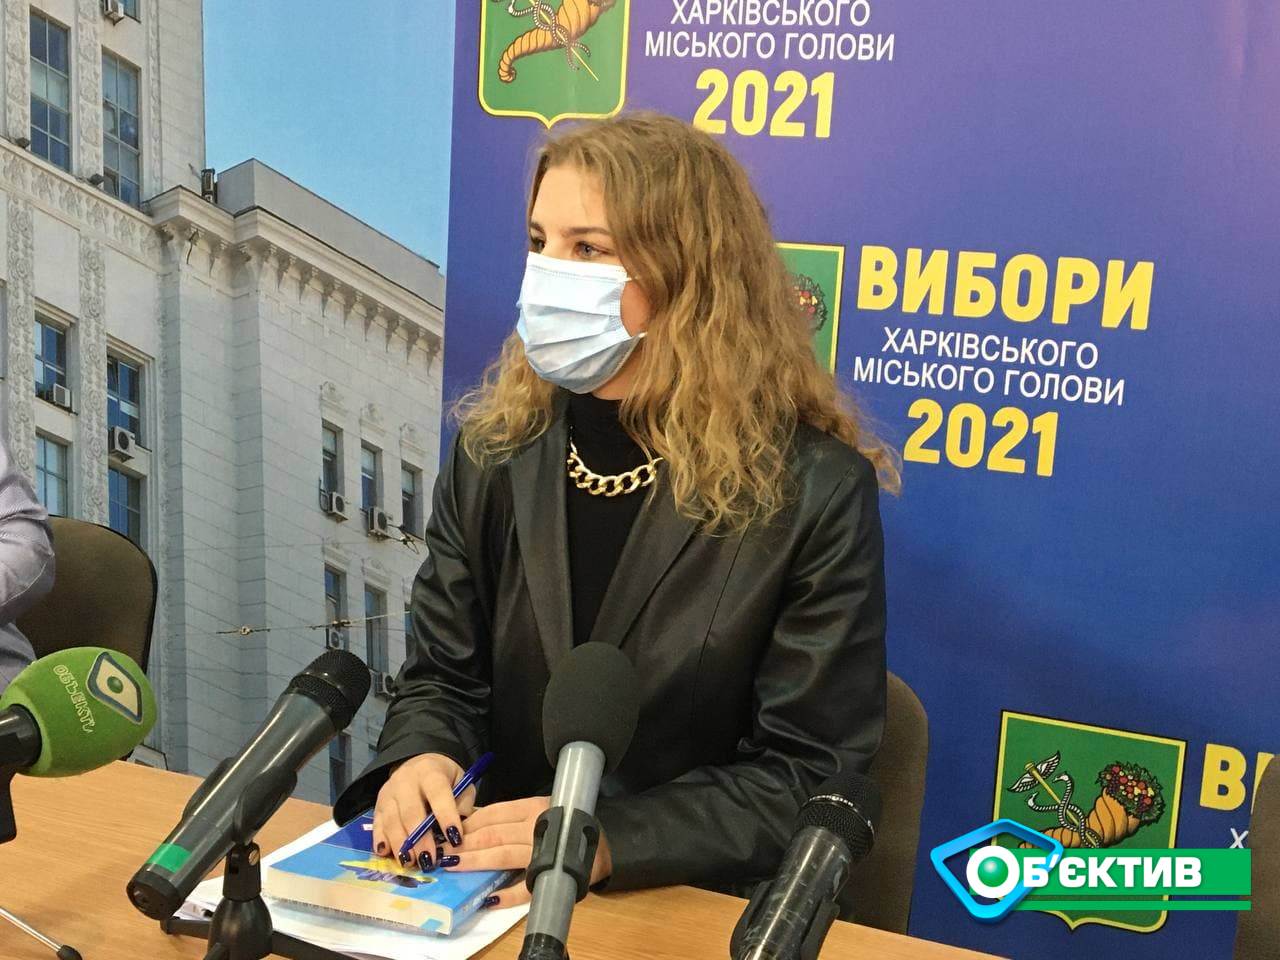 Выборы мэра Харькова: к часу дня проголосовали всего 130 тысяч избирателей